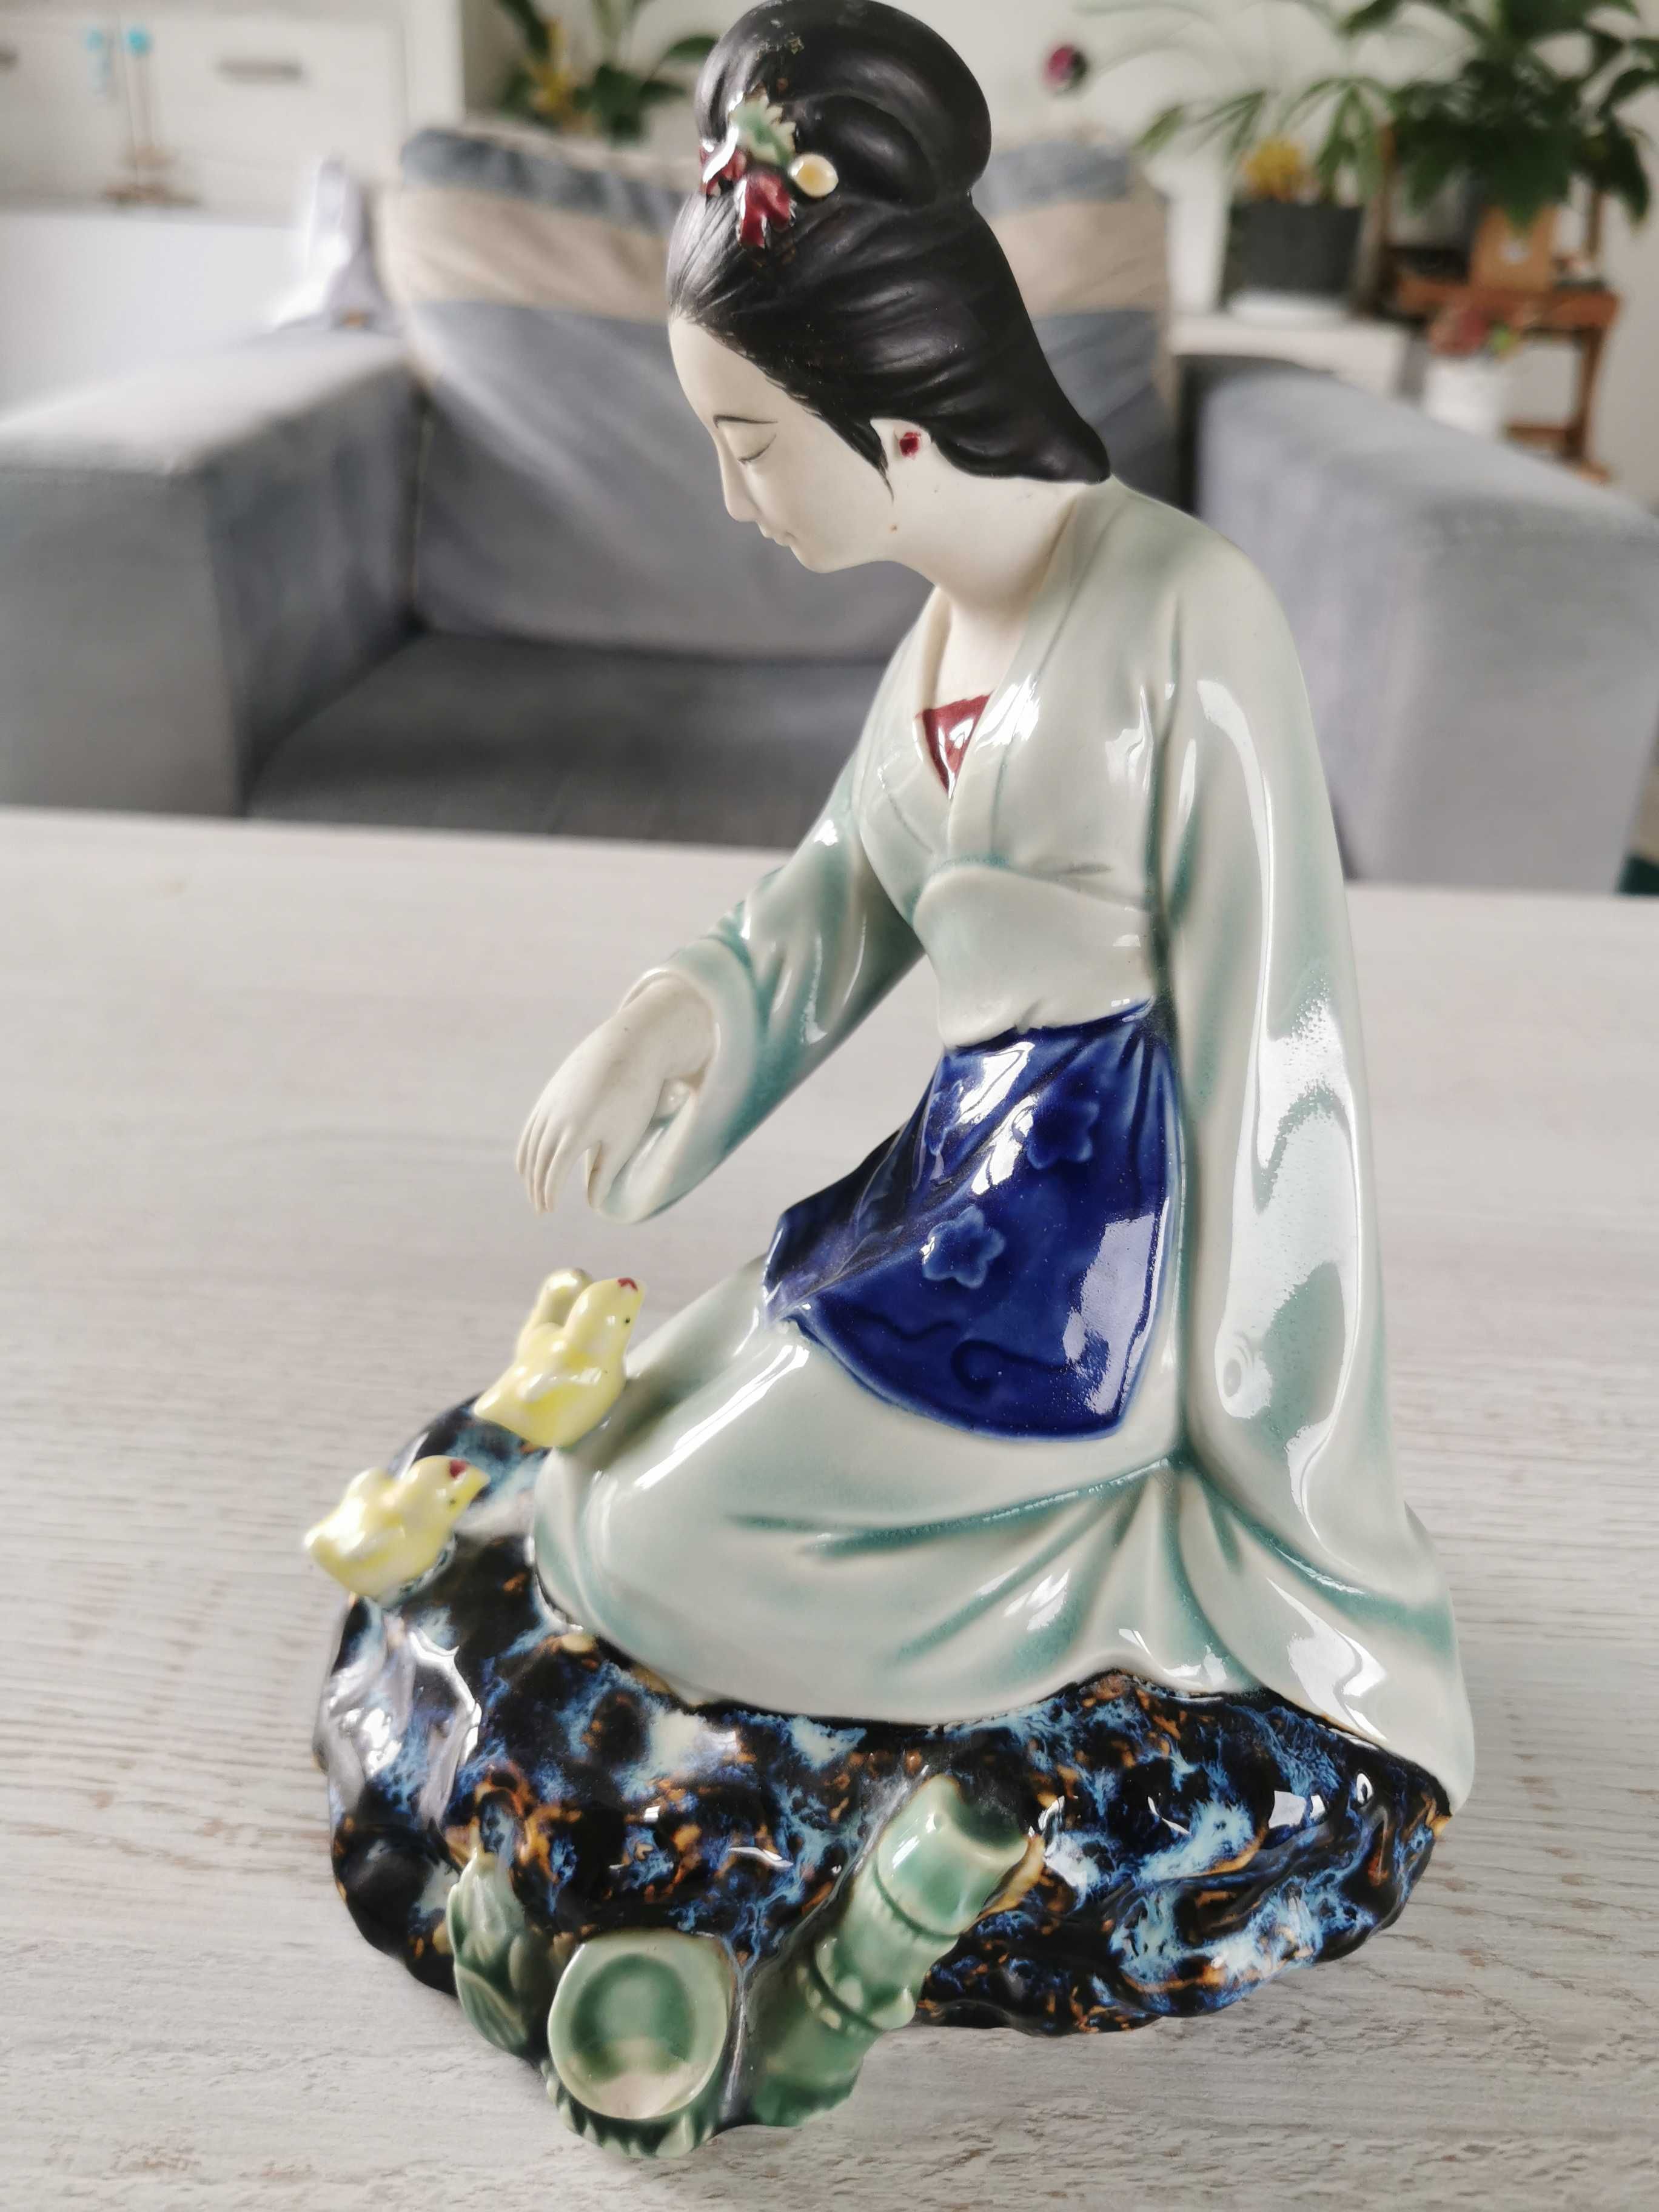 Piękna porcelanowa figurka kobiety - Azja / Chiny /Japonia